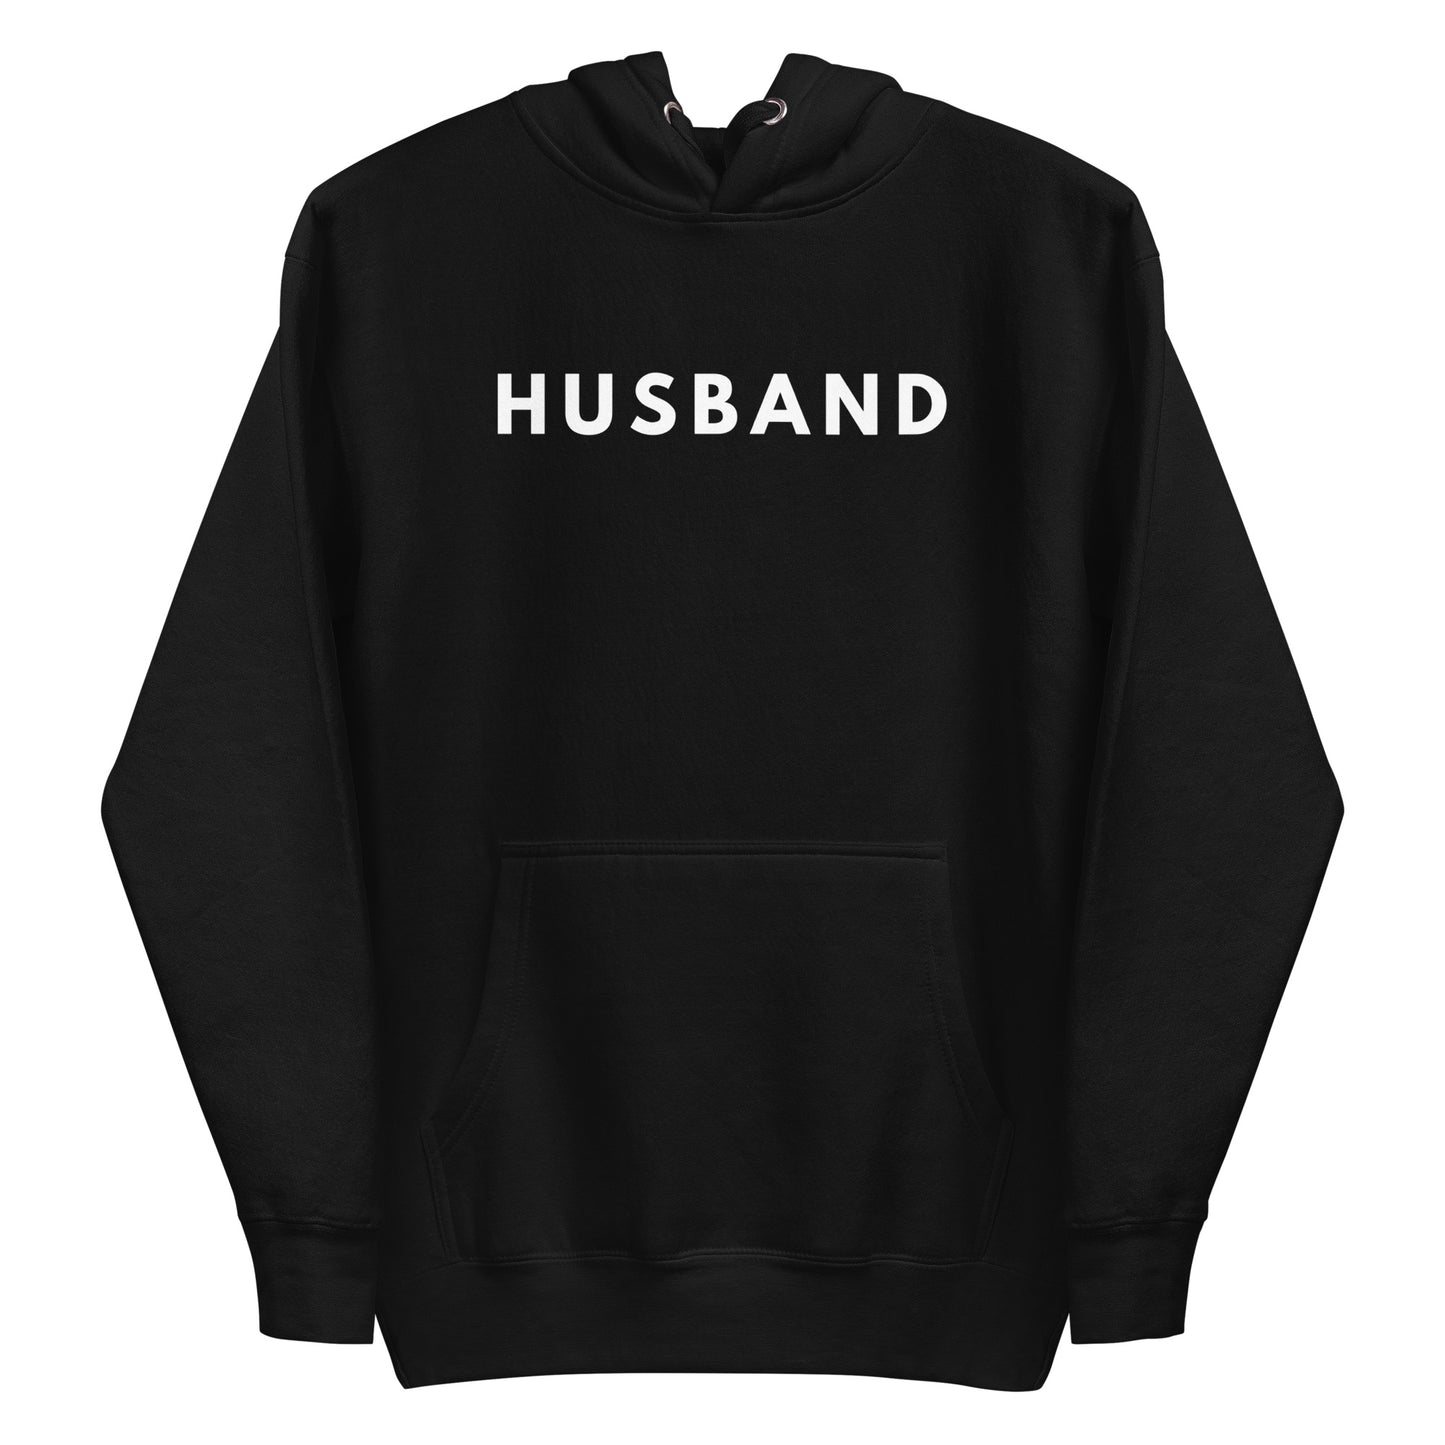 Wife, Husband Couple Hoodies